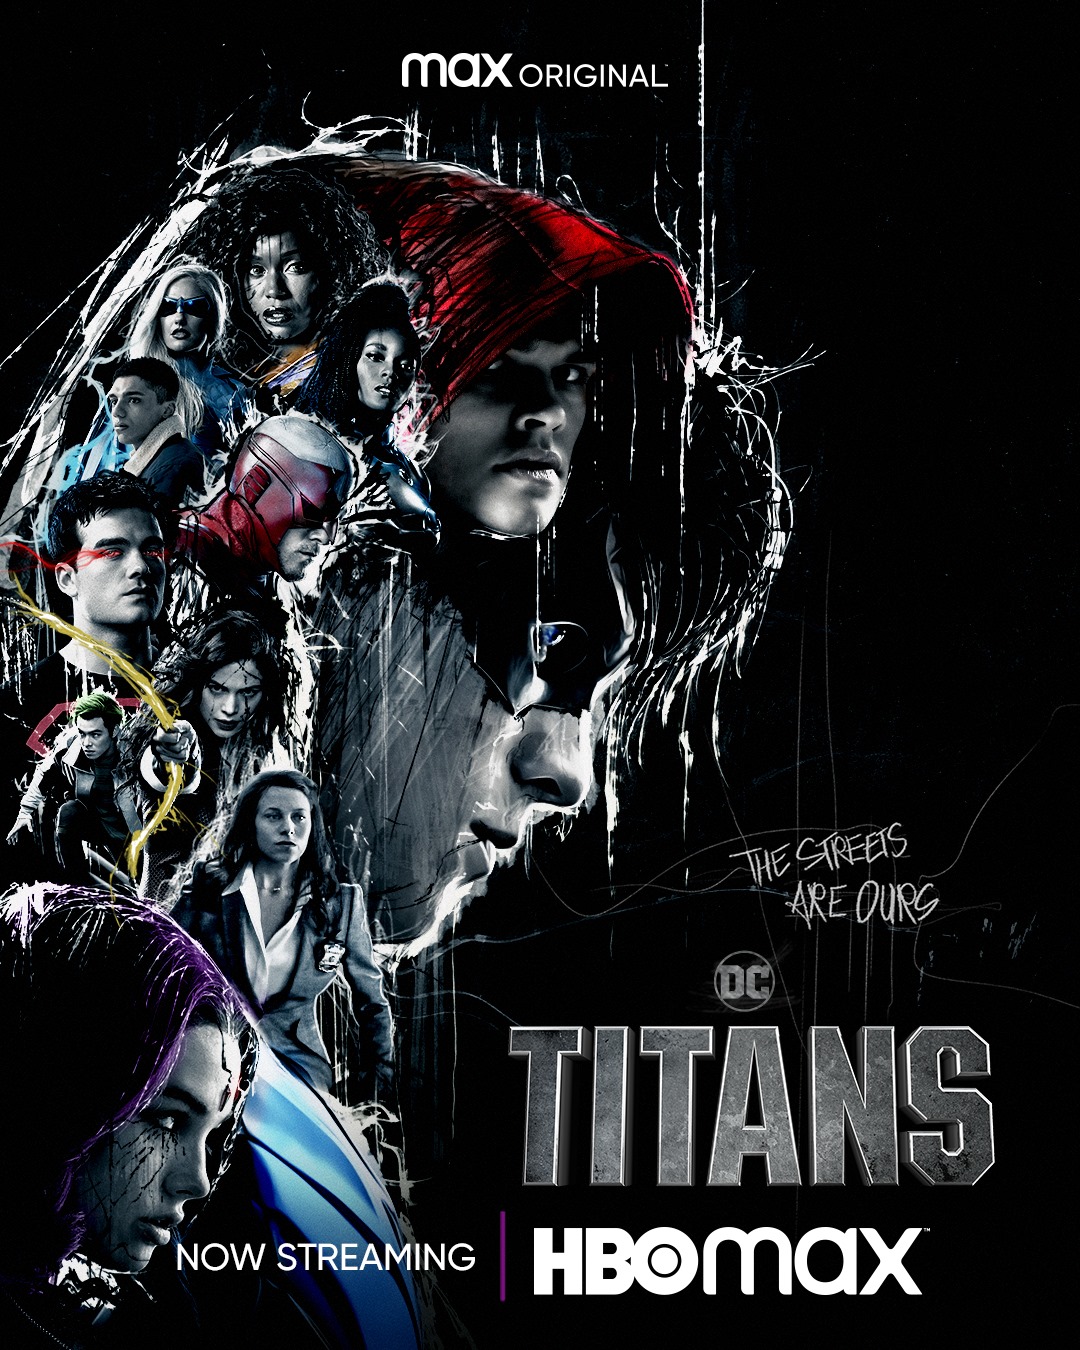 La tercera temporada de Titans llegará a Latinoamérica en diciembre a  través de Netflix - La Tercera